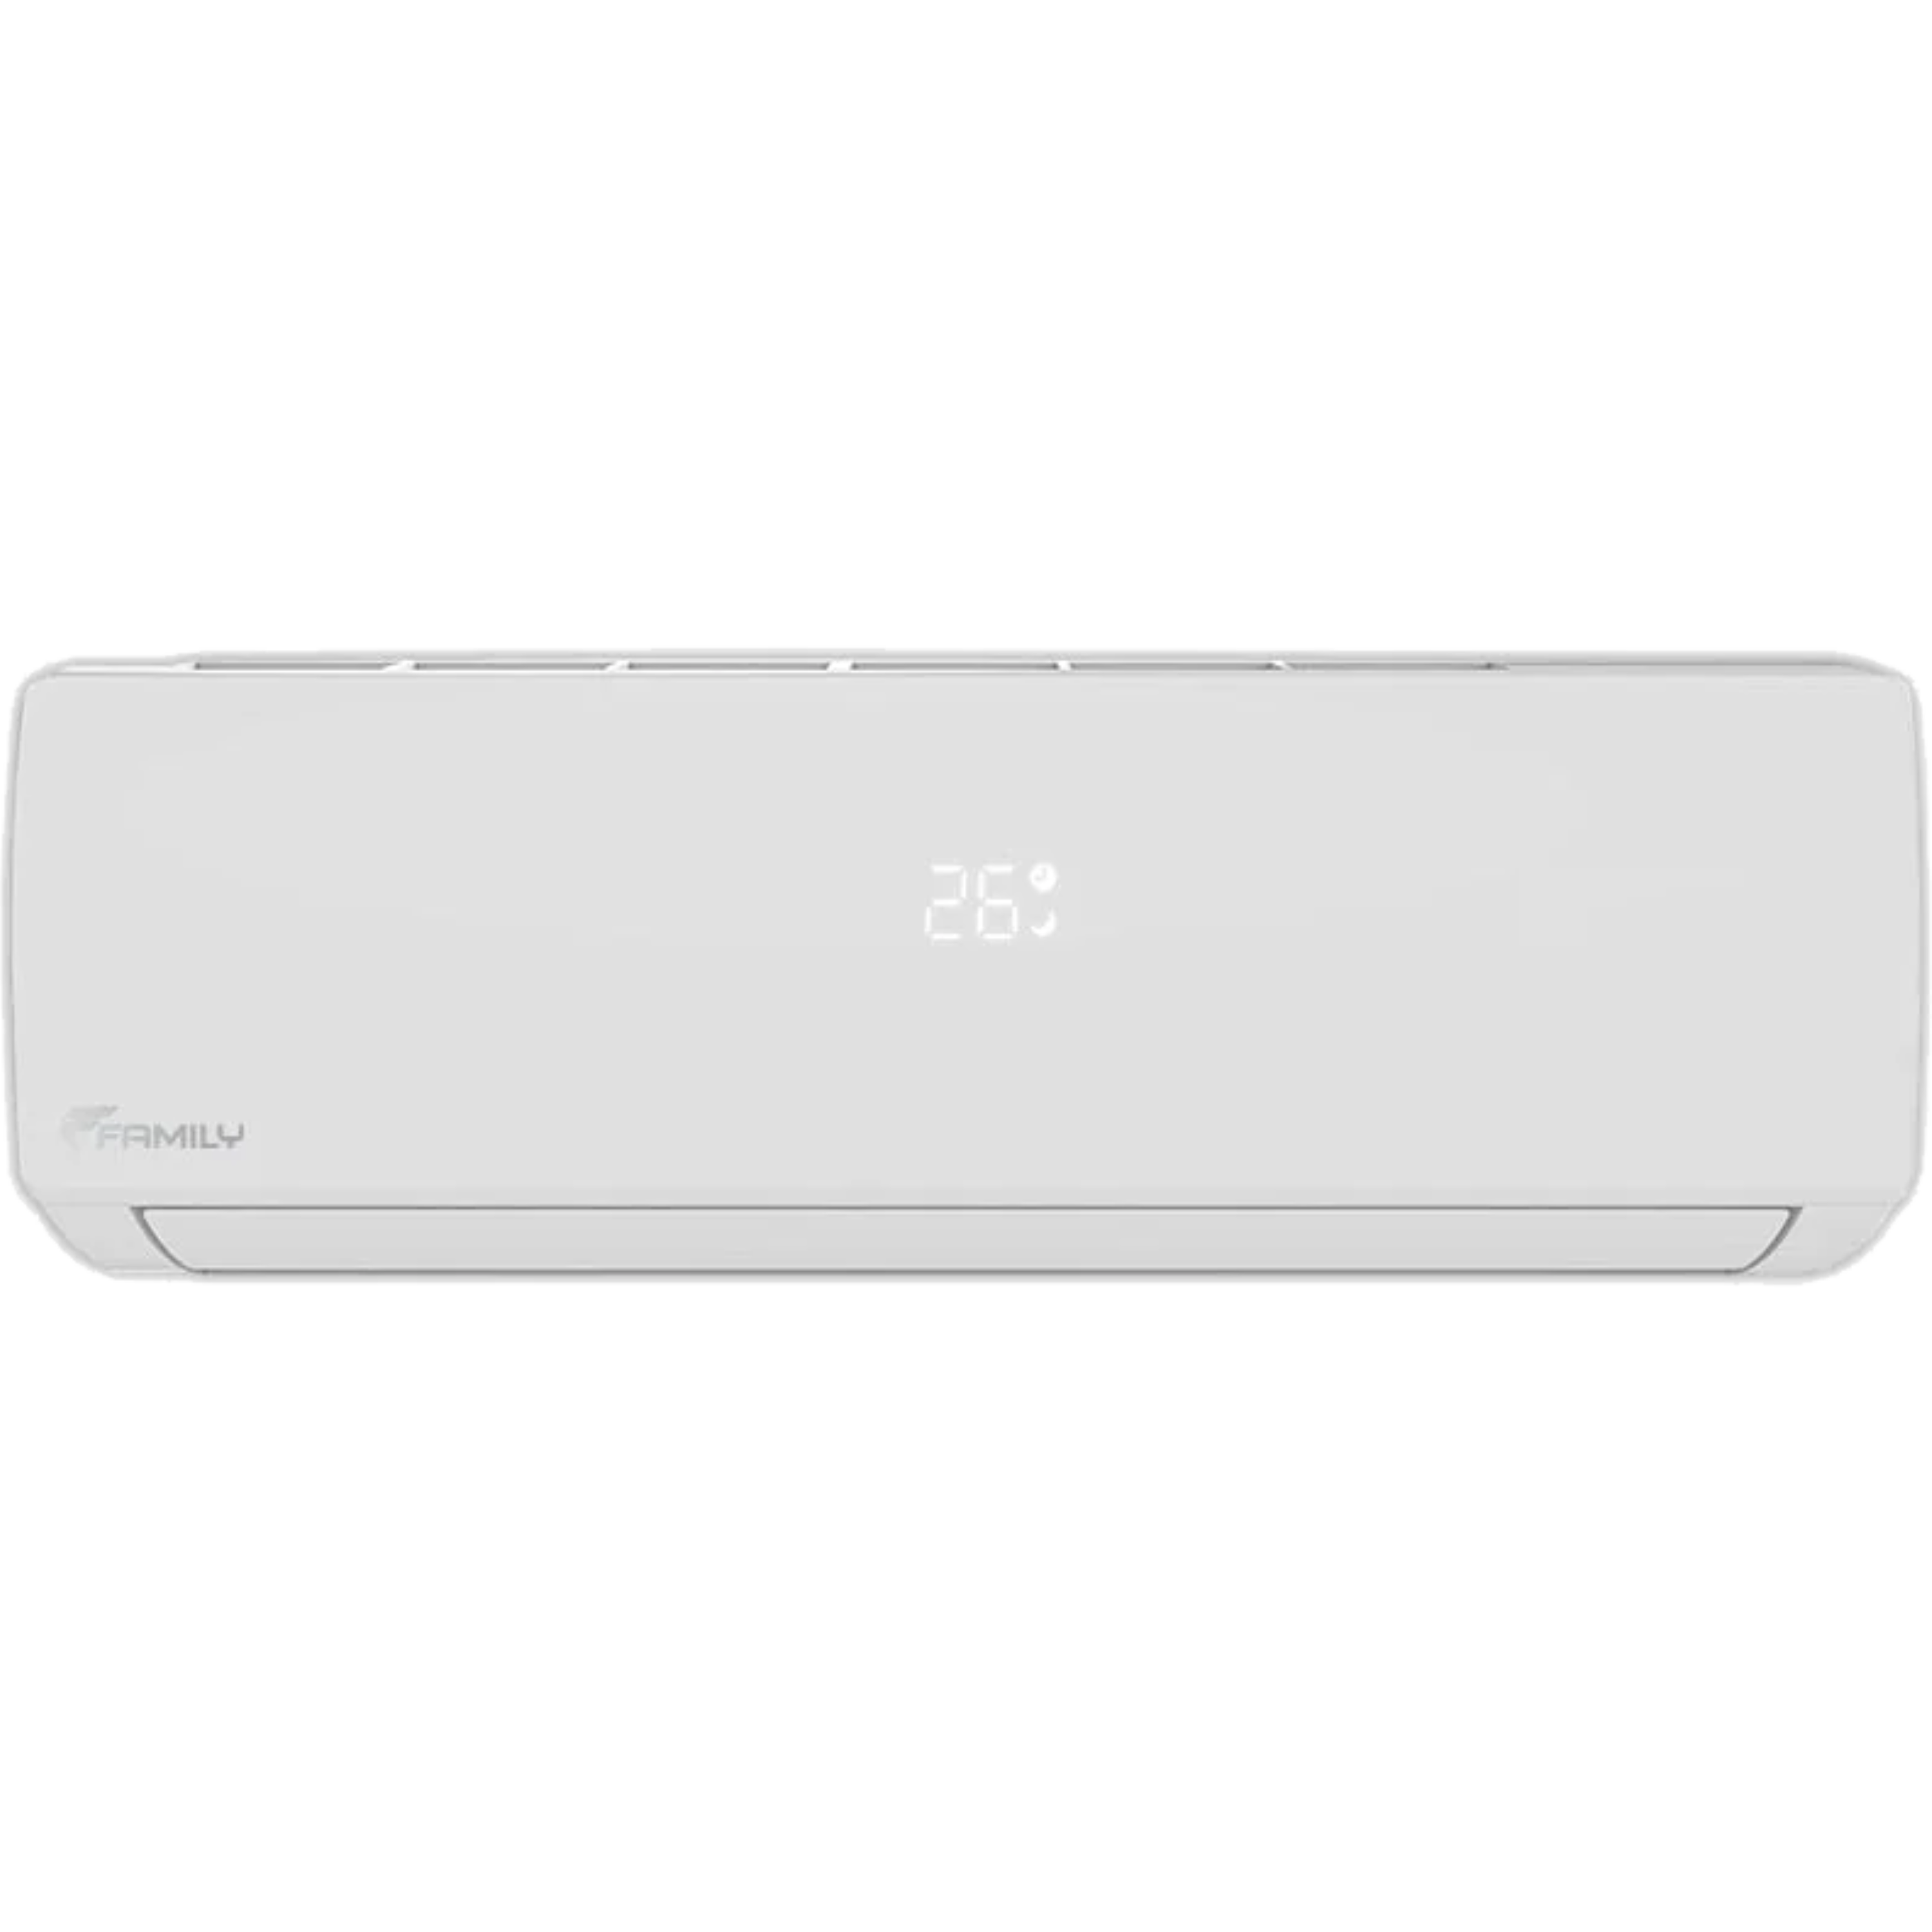 מזגן עילי Family Comfort Inverter 18 - צבע לבן חמש שנות אחריות ע